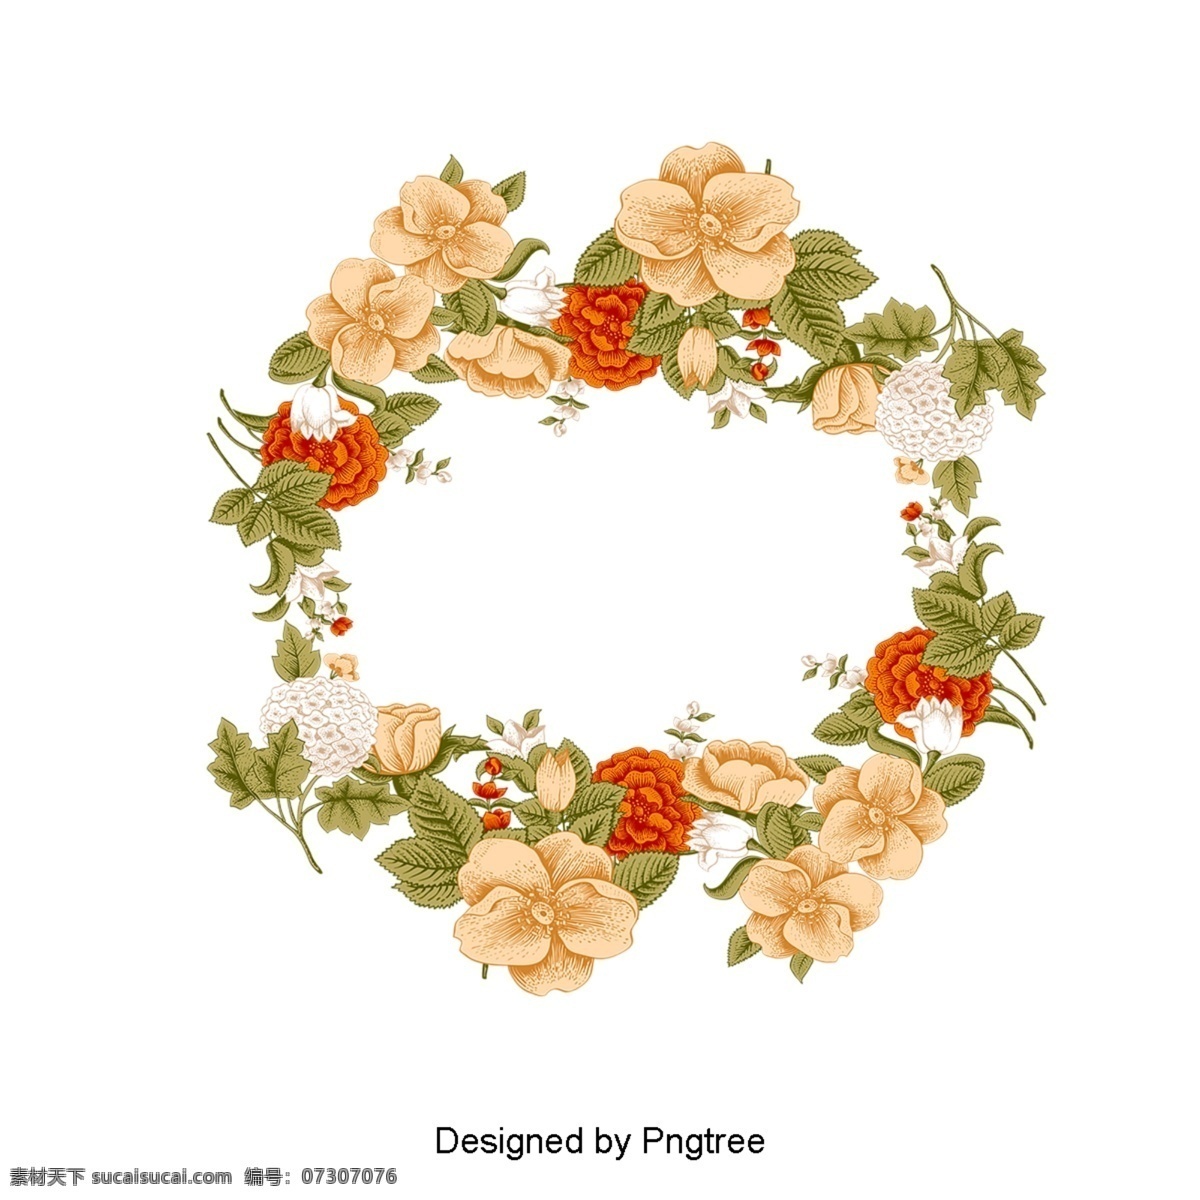 浪漫 粉 白花 绿叶 花环 材料 粉色 白色 红色 花朵 玫瑰 叶子 圆圈 边框 温暖 花蕾 材质